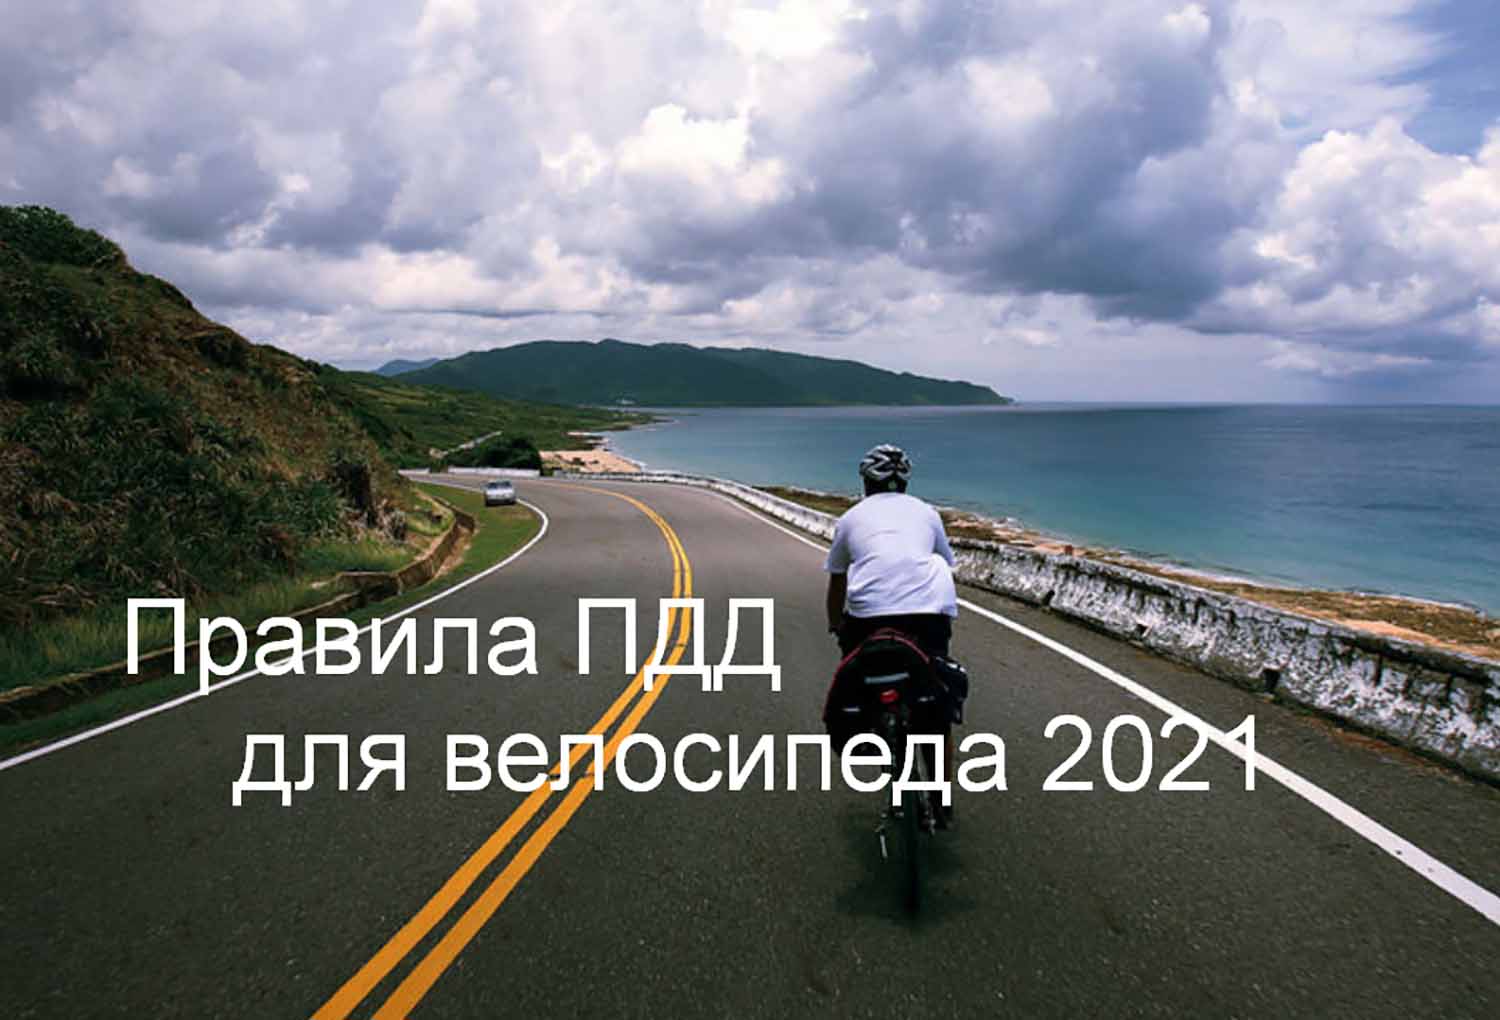 Правила ПДД для велосипеда 2021